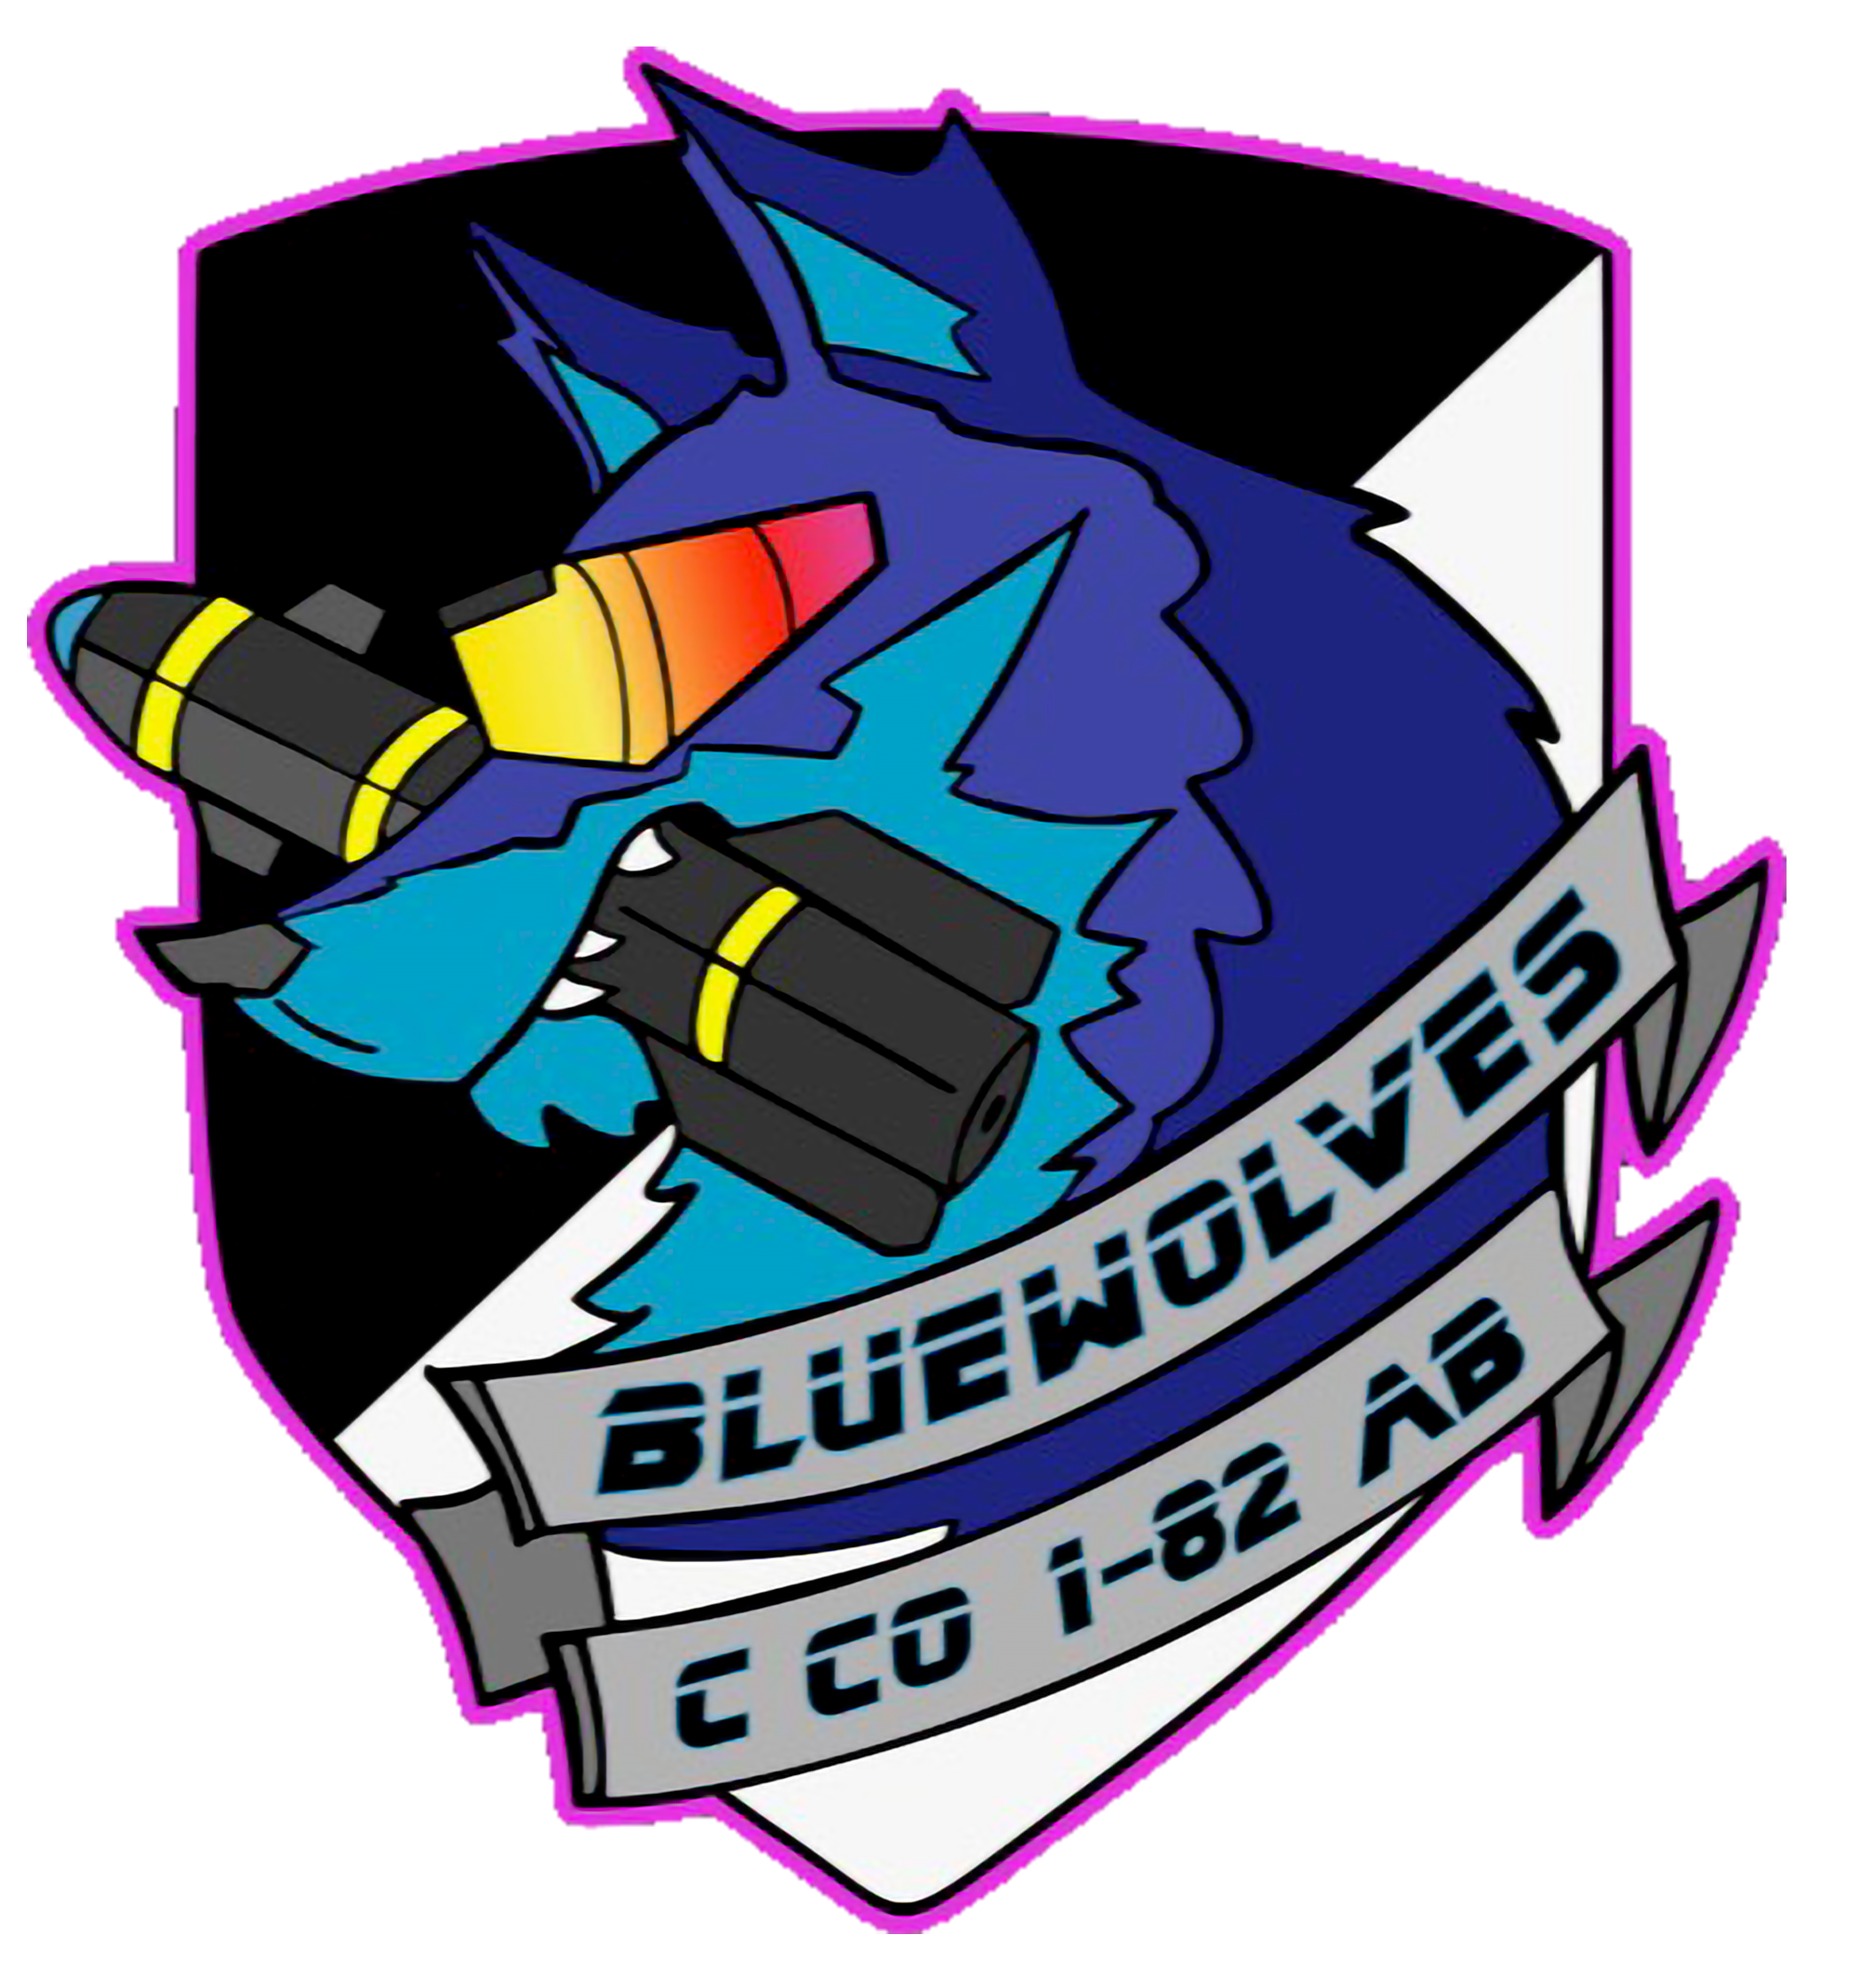 C Co, 1-82 AB "Bluewolves"